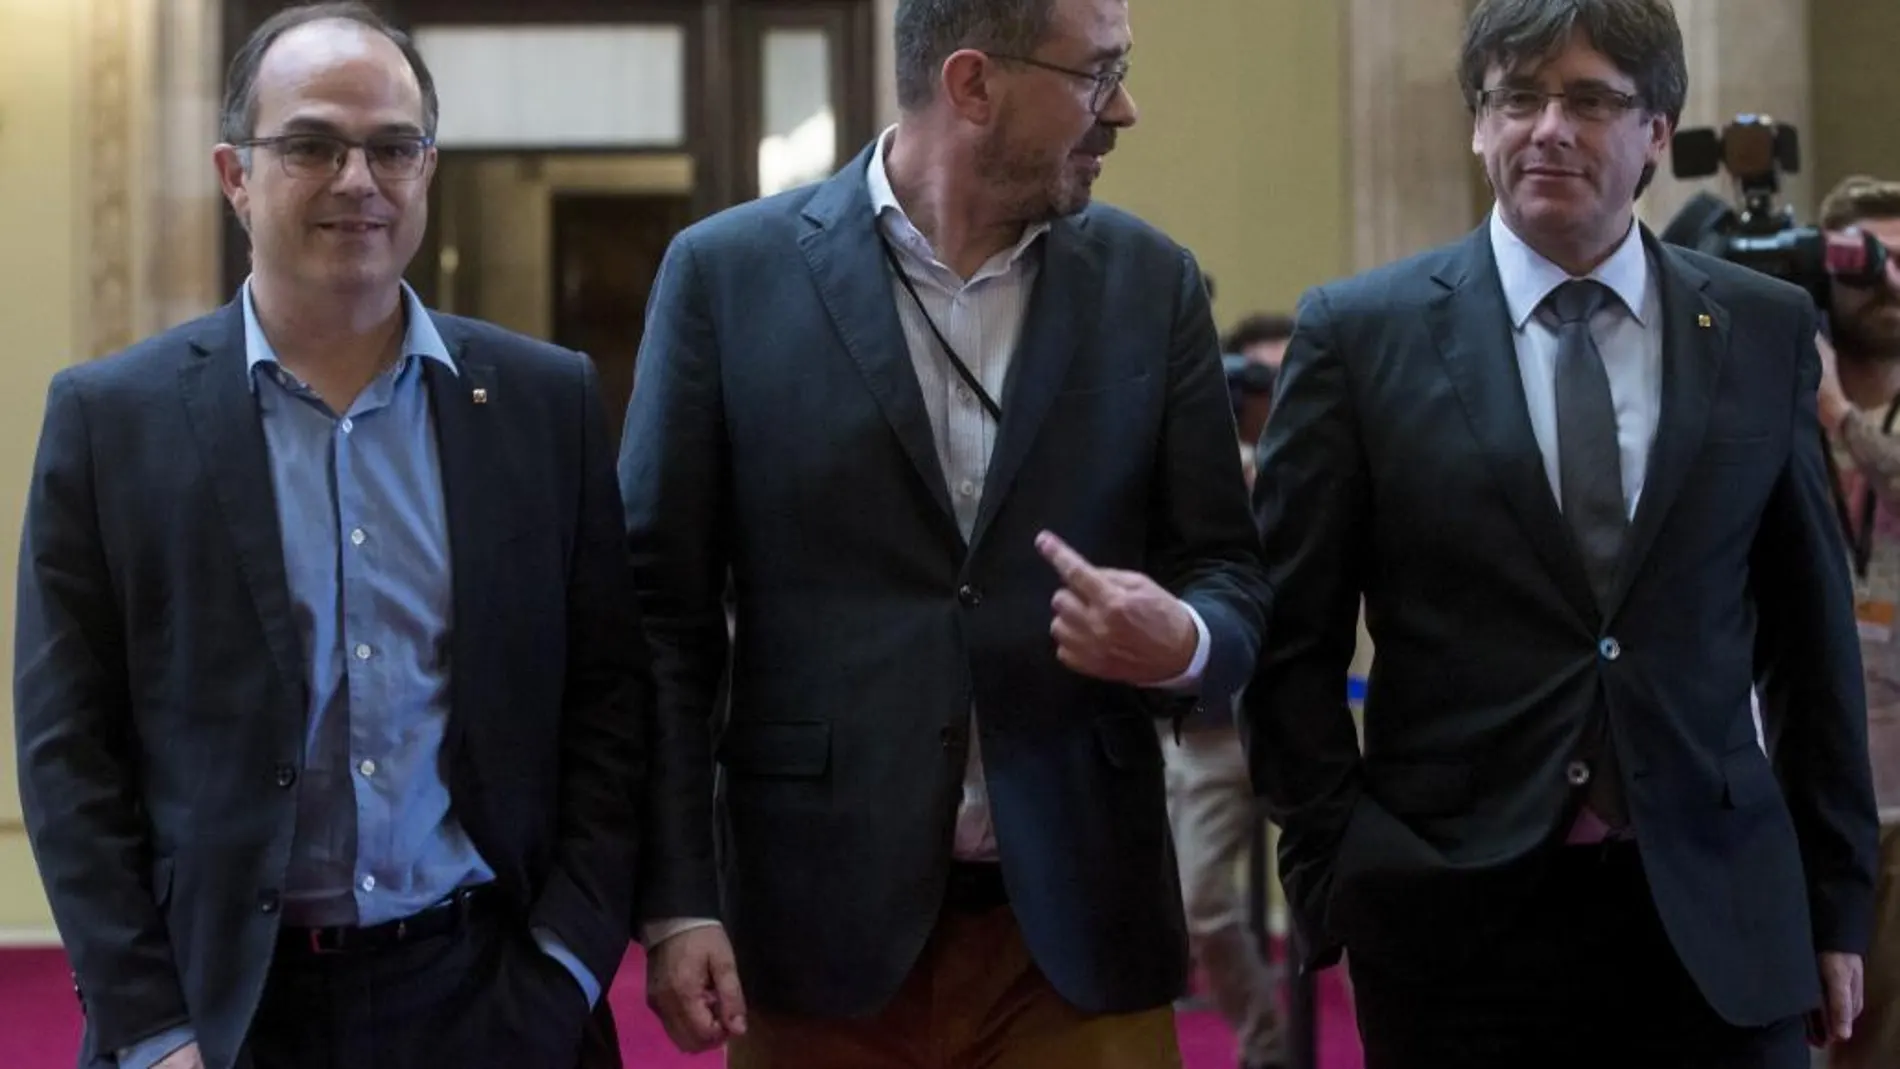 El presidente de la Generalitat de Cataluña, Carles Puigdemont, se dirige junto al director general de Comunicación de la Generalitat, Jaume Clotet, y el conseller de la Presidencia, Jordi Turull